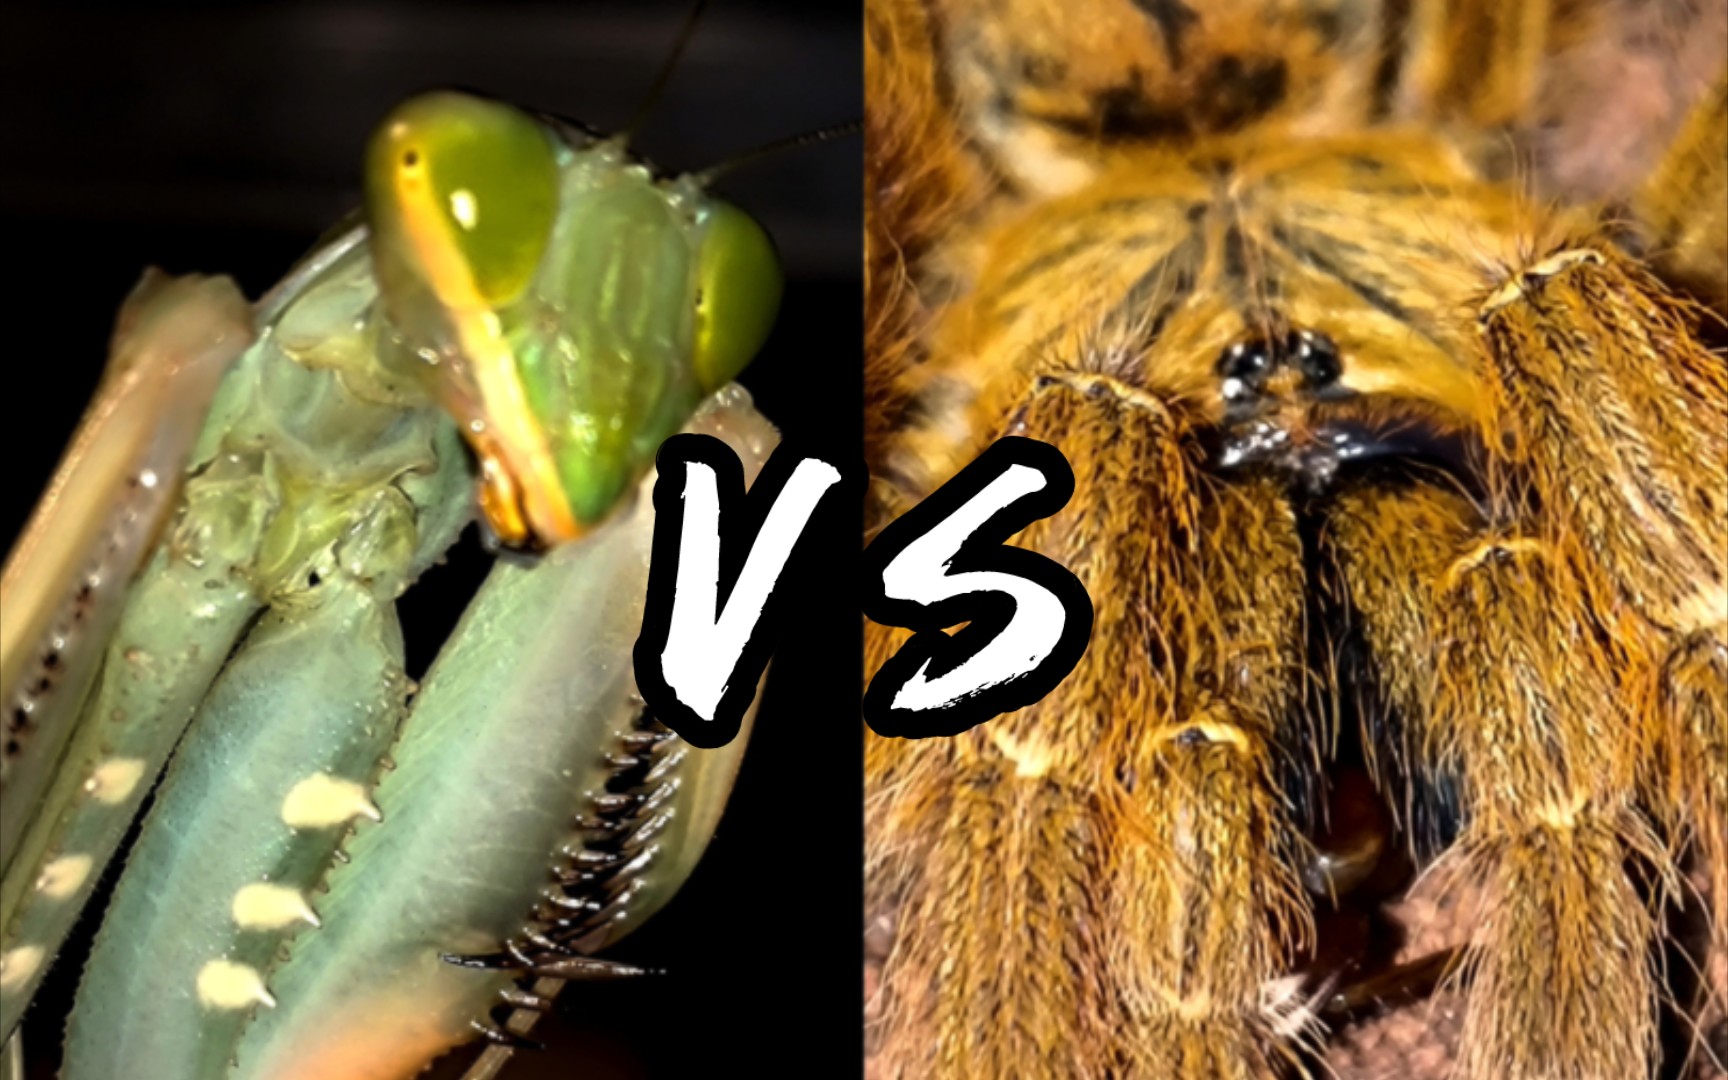 昆虫军vs毒虫军图片